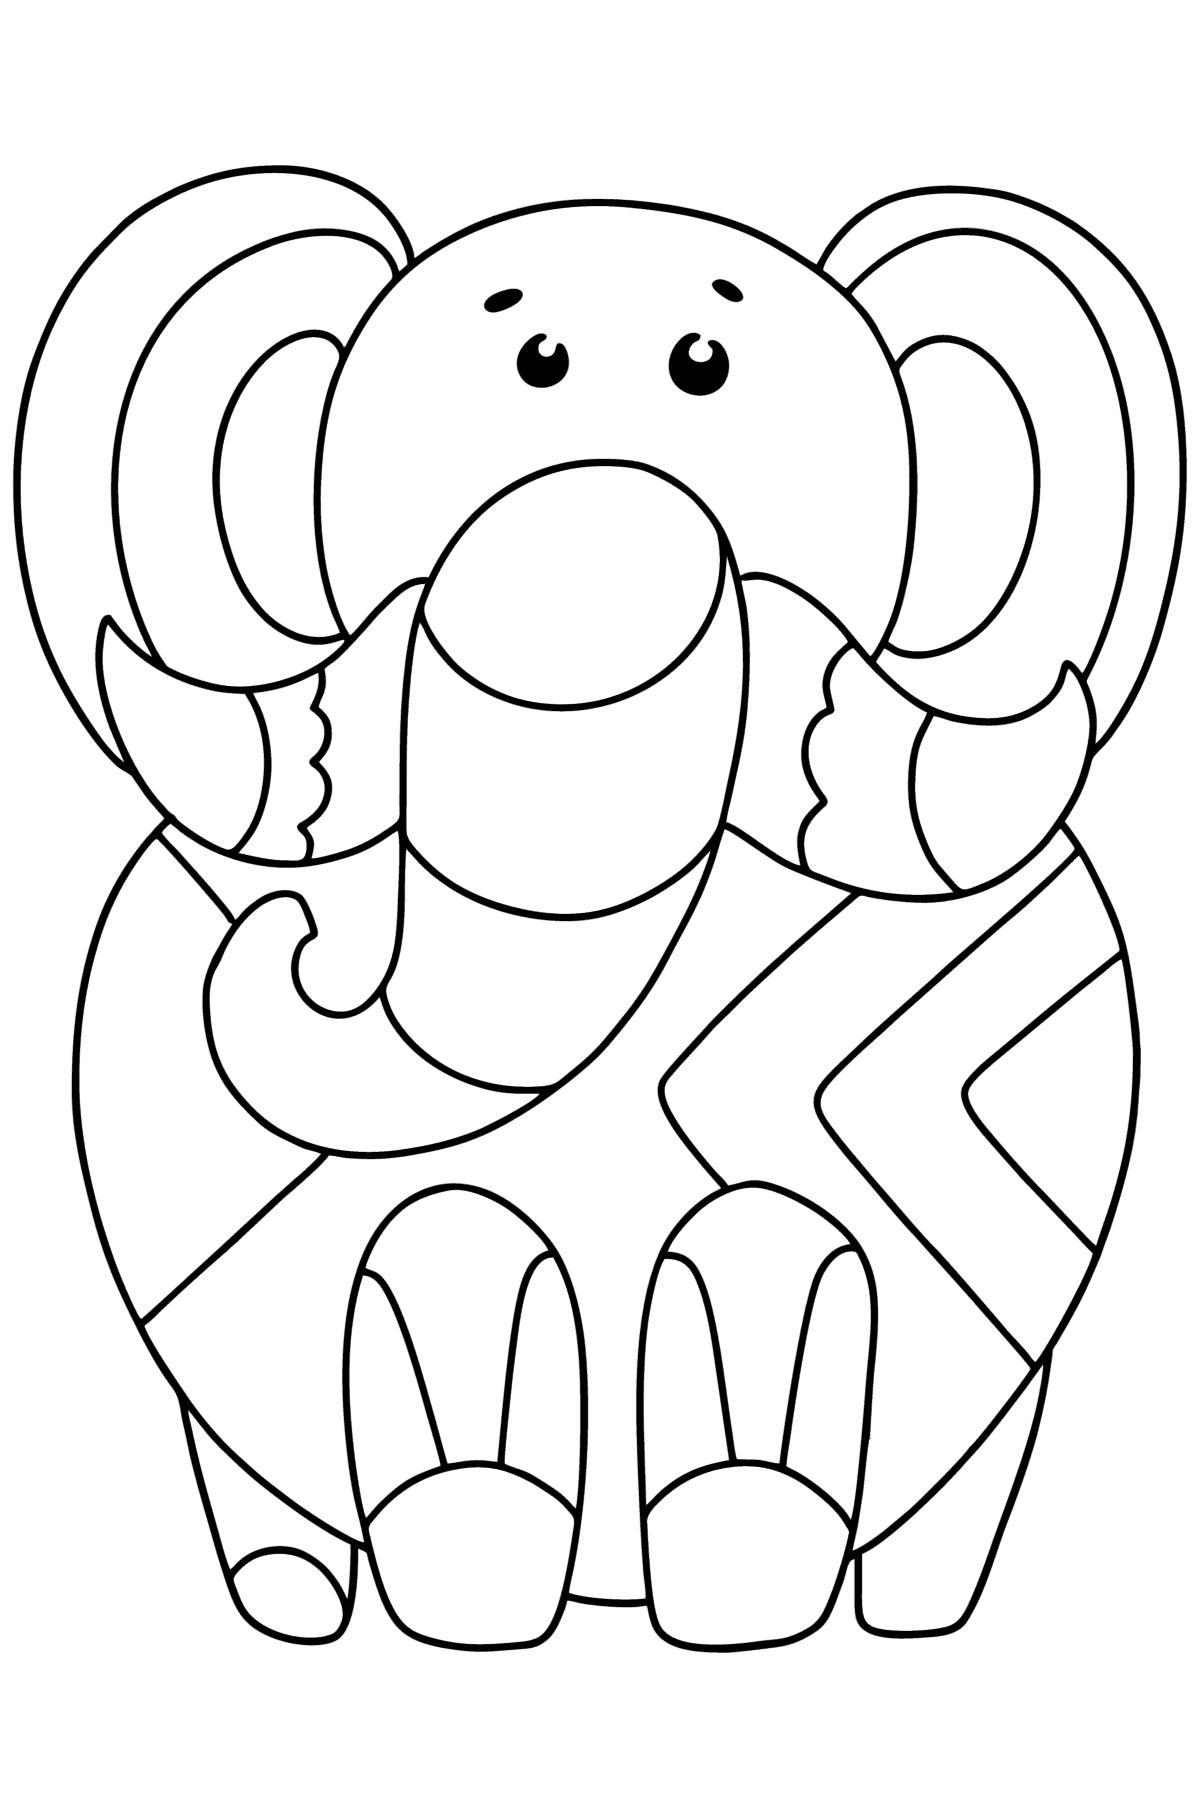 Ausmalbild Mandala Tiere - Elefant - Malvorlagen für Kinder